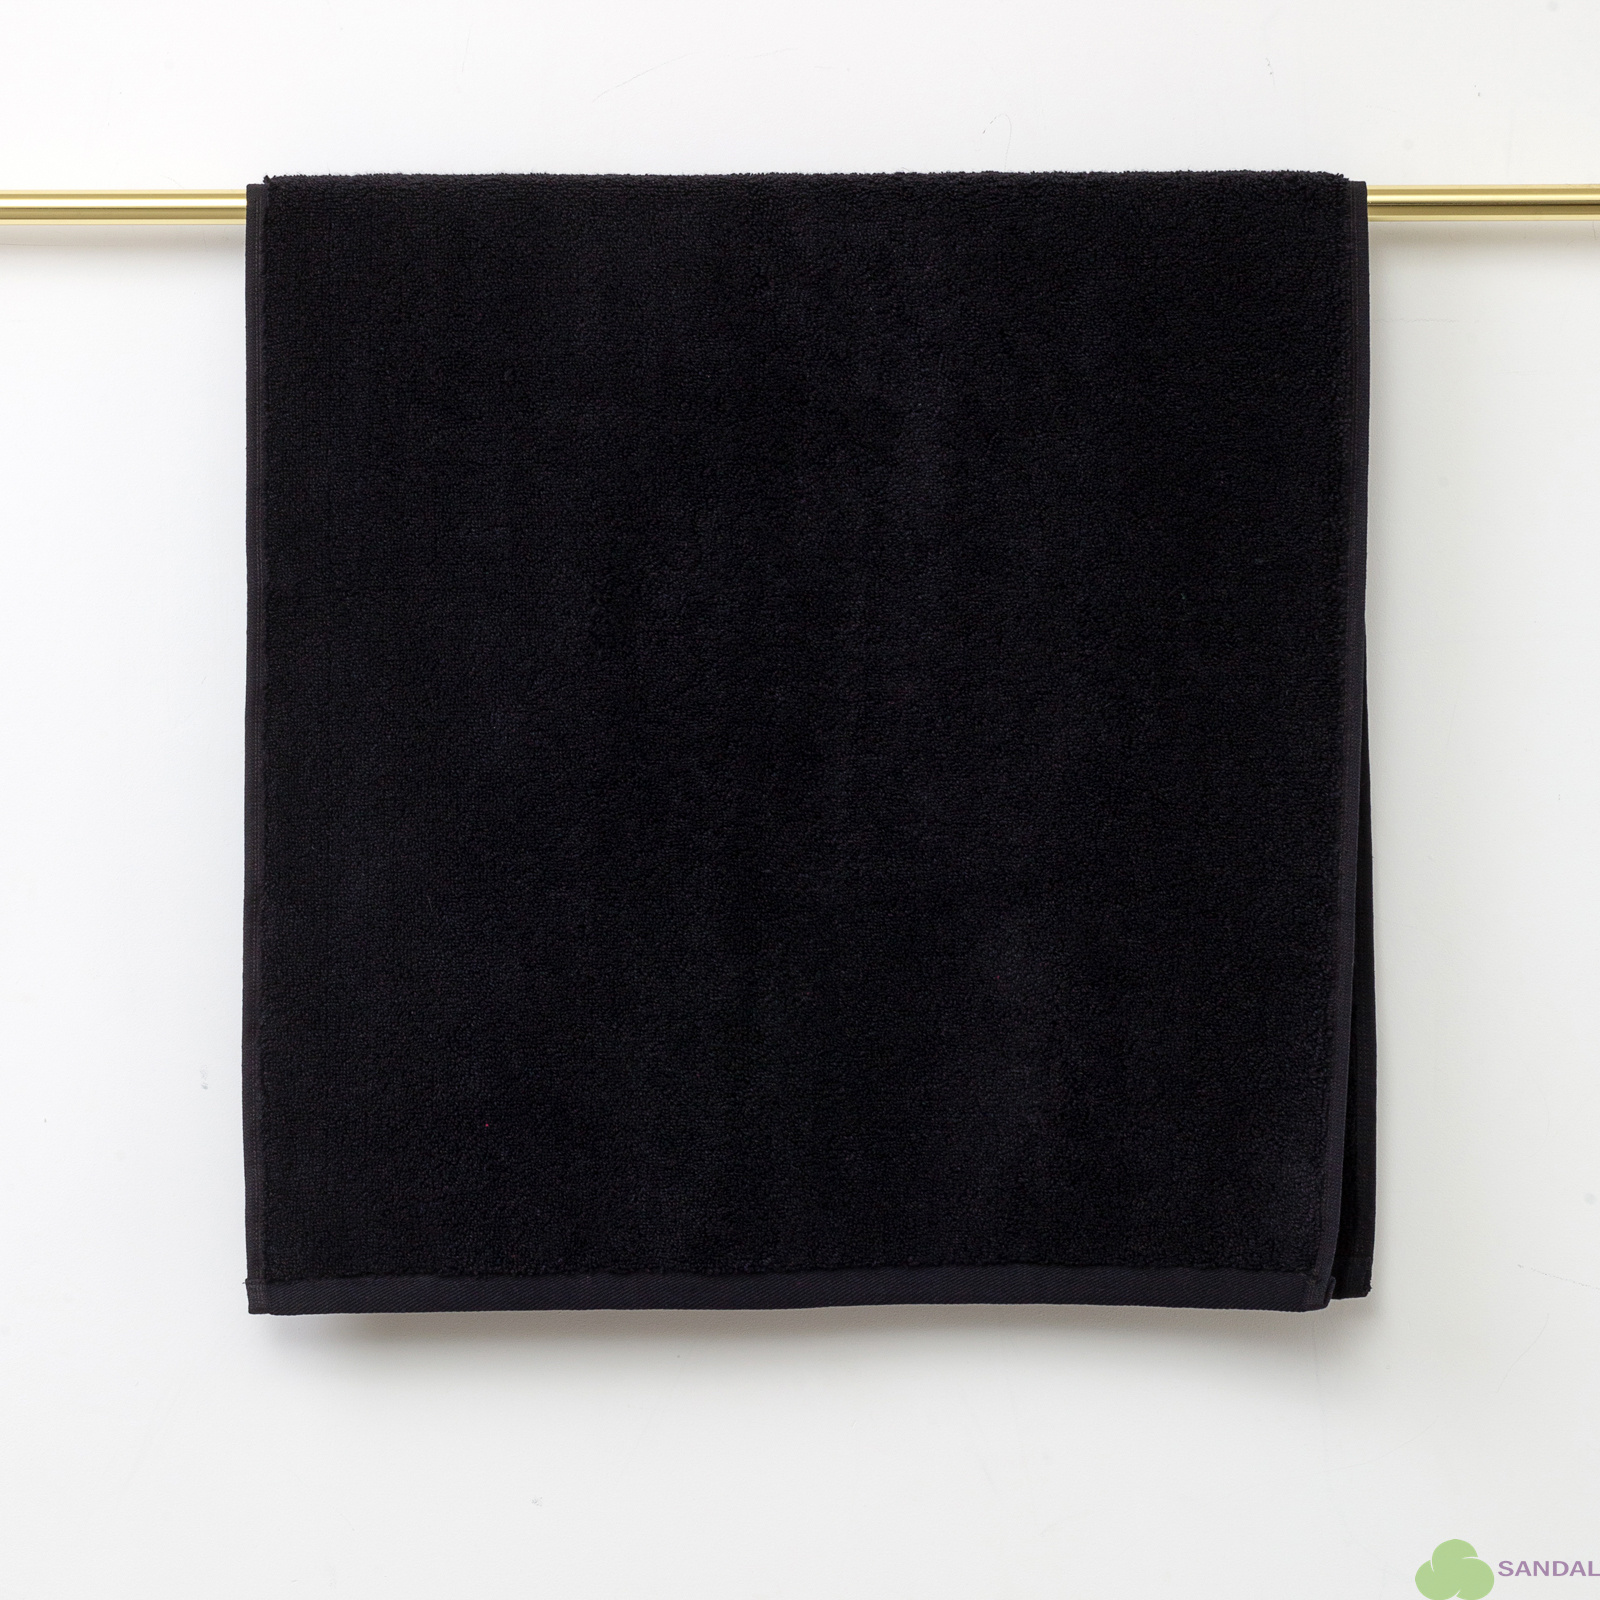 Махровое полотенце Sandal "SuperSoft" 50*100 см., цвет - черный, пл. 500 гр.